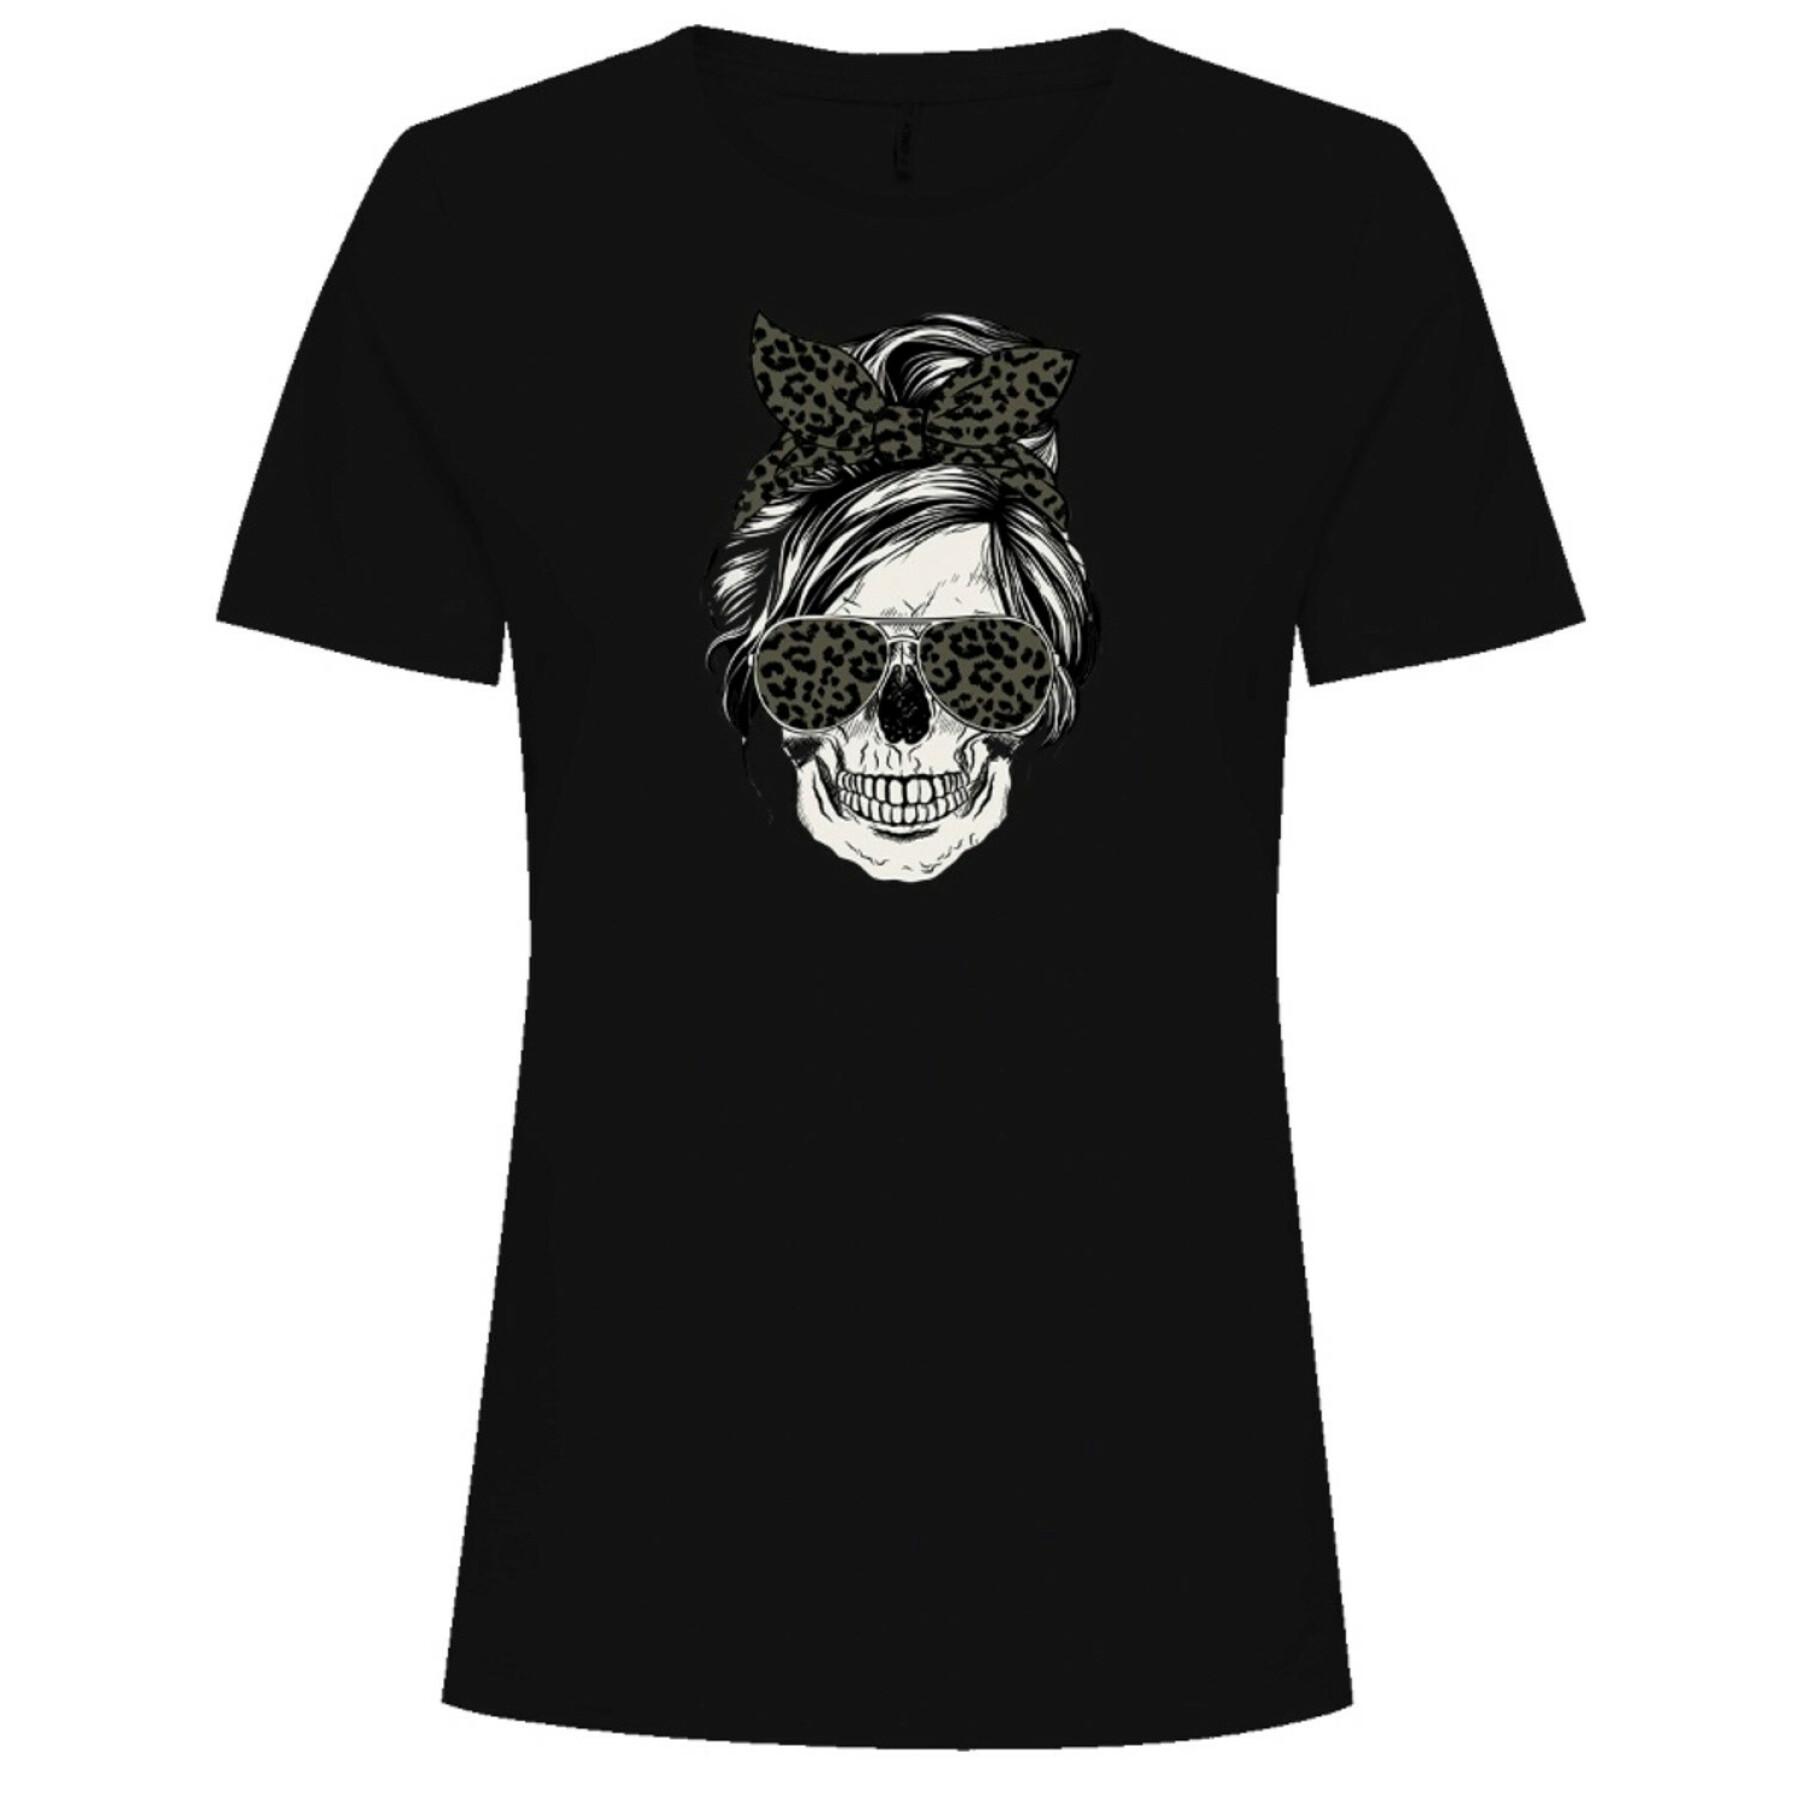 T-Shirt Frau Only Skull Top